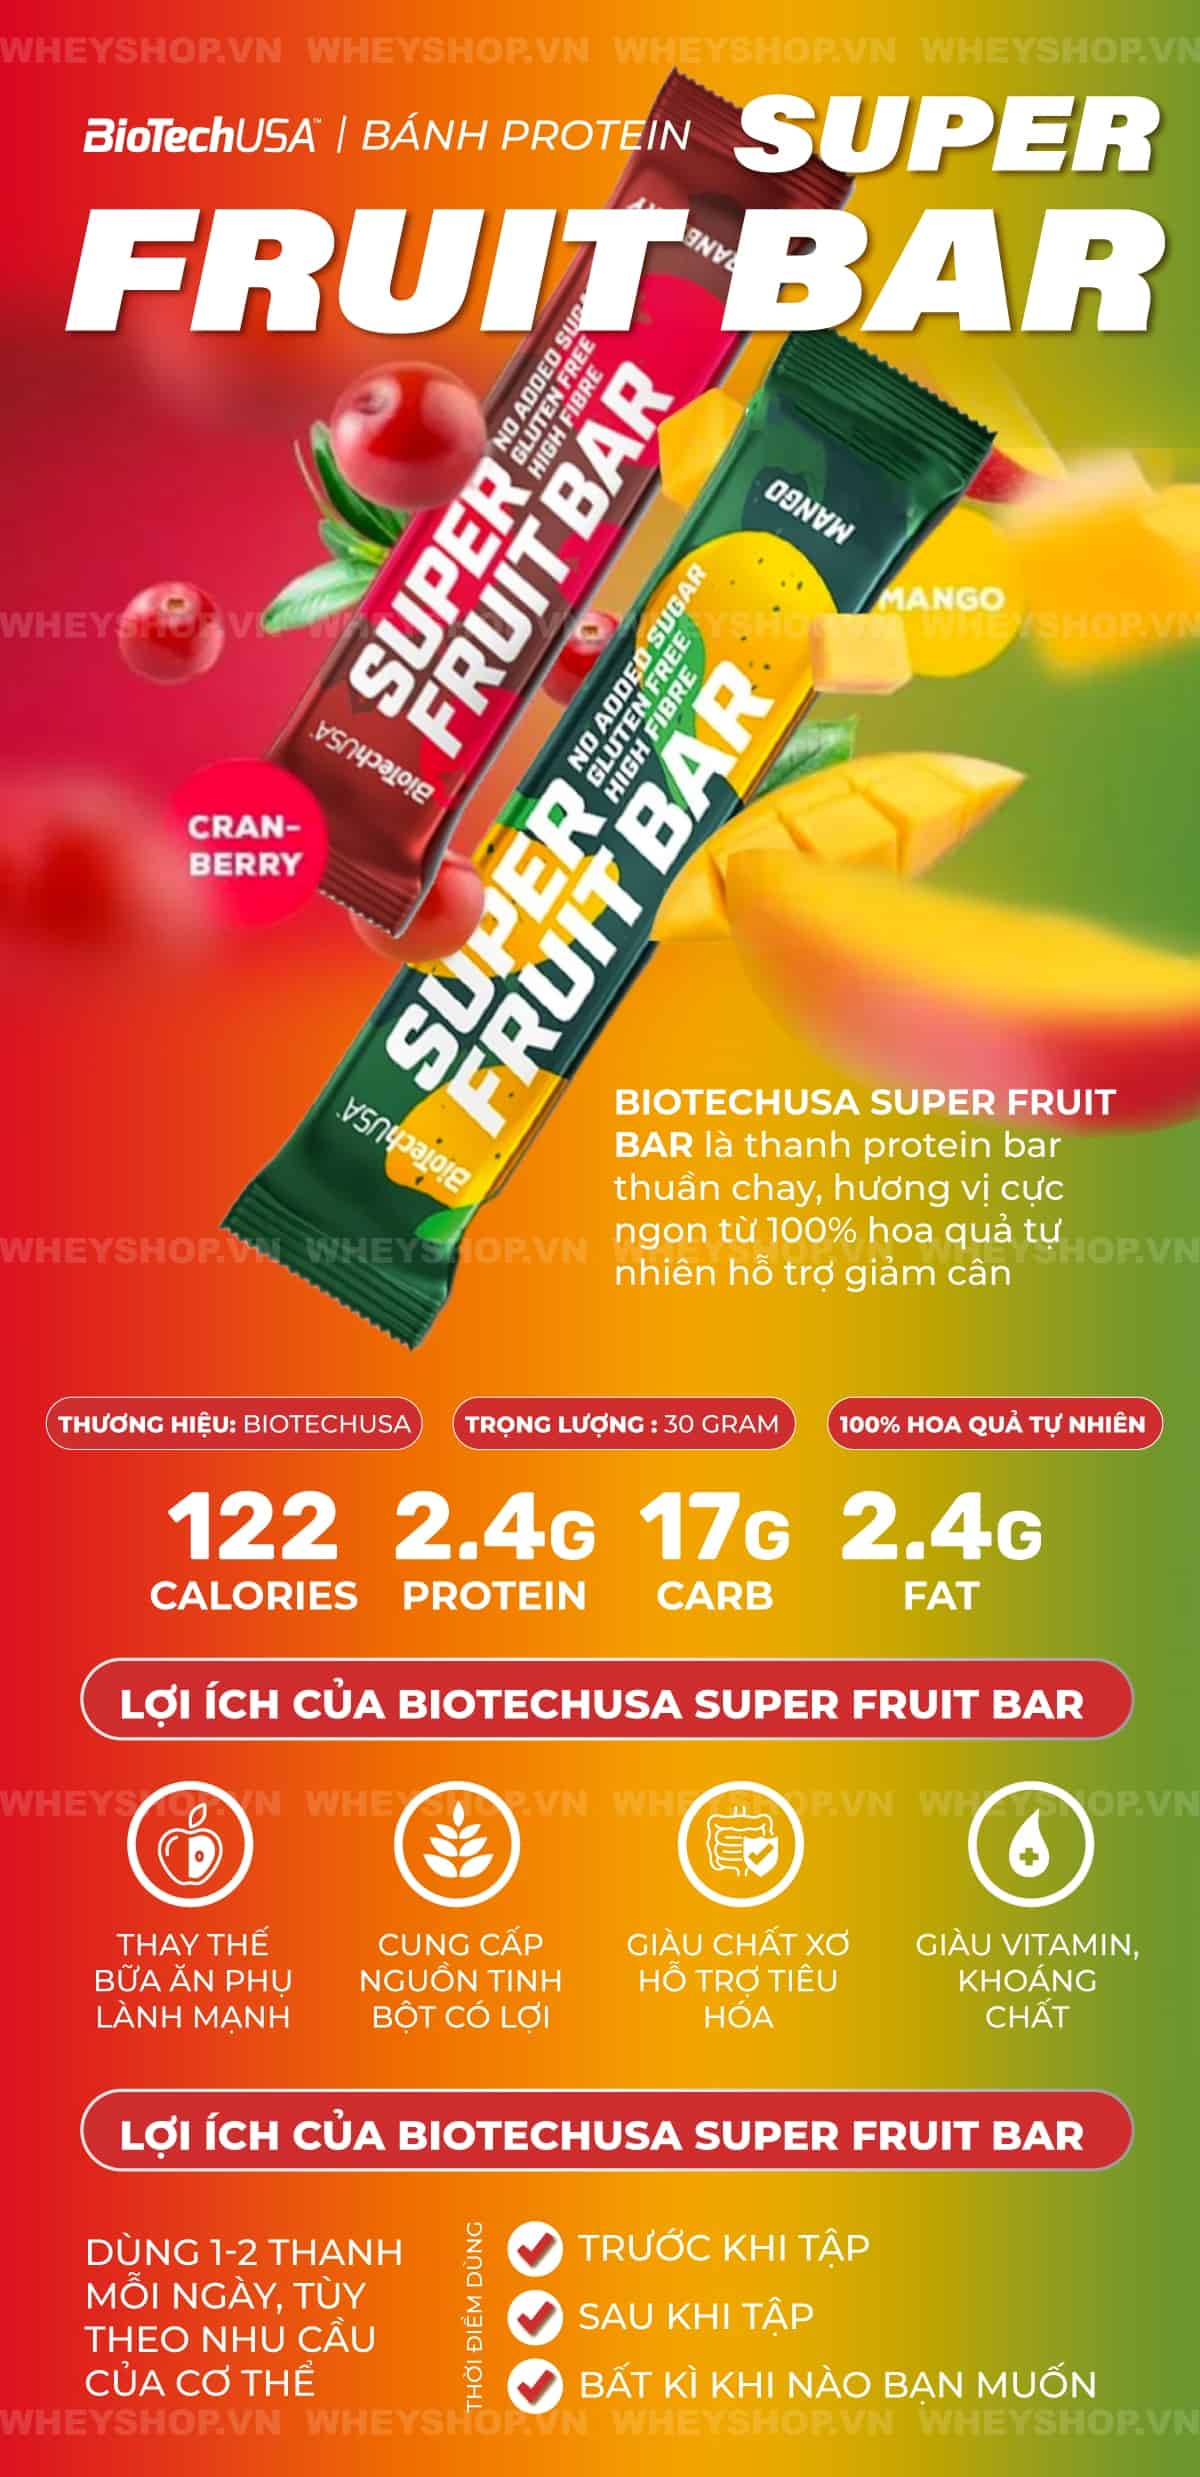 BiotechUSA Super Fruit Bar là thanh protein bar thuần chay, hương vị cực ngon từ 100% hoa quả tự nhiên hỗ trợ giảm cân. Sản phẩm nhập khẩu, giá rẻ tốt nhất Hà Nội TpHCM